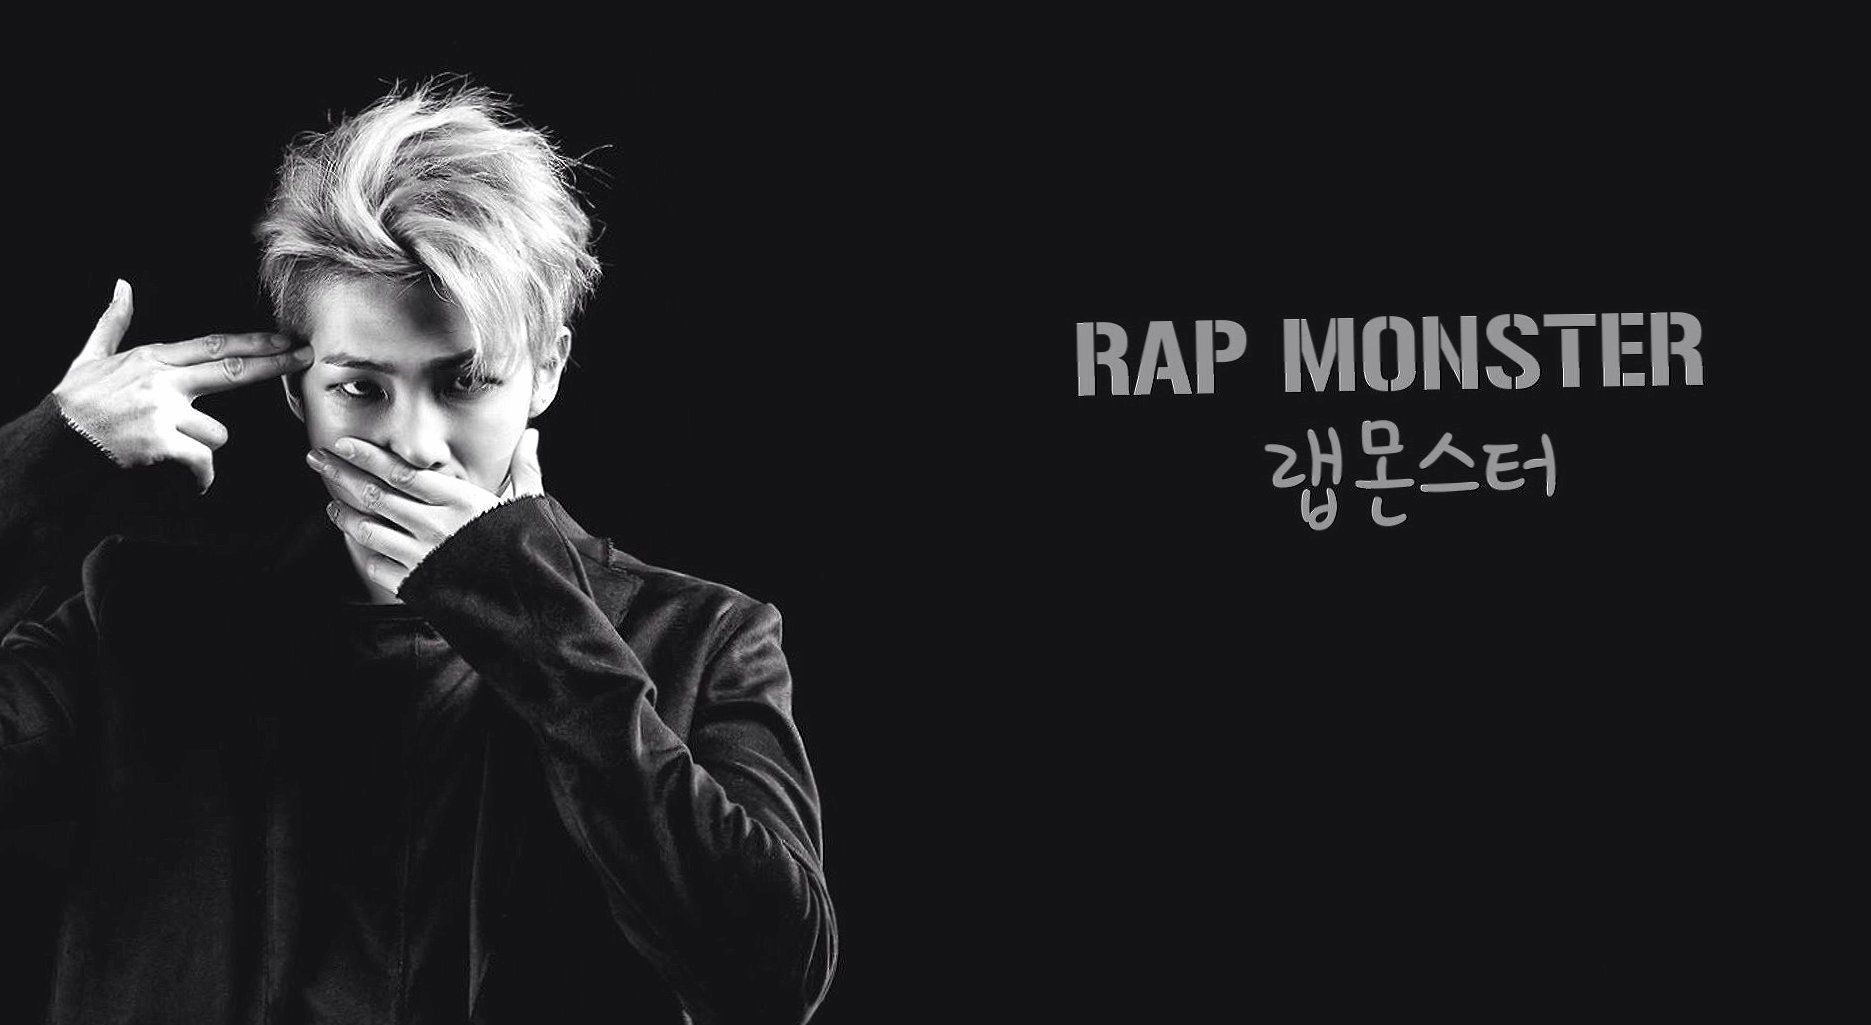 BTS wallpaper HD. Bts laptop wallpaper, Music wallpaper, Rap monster